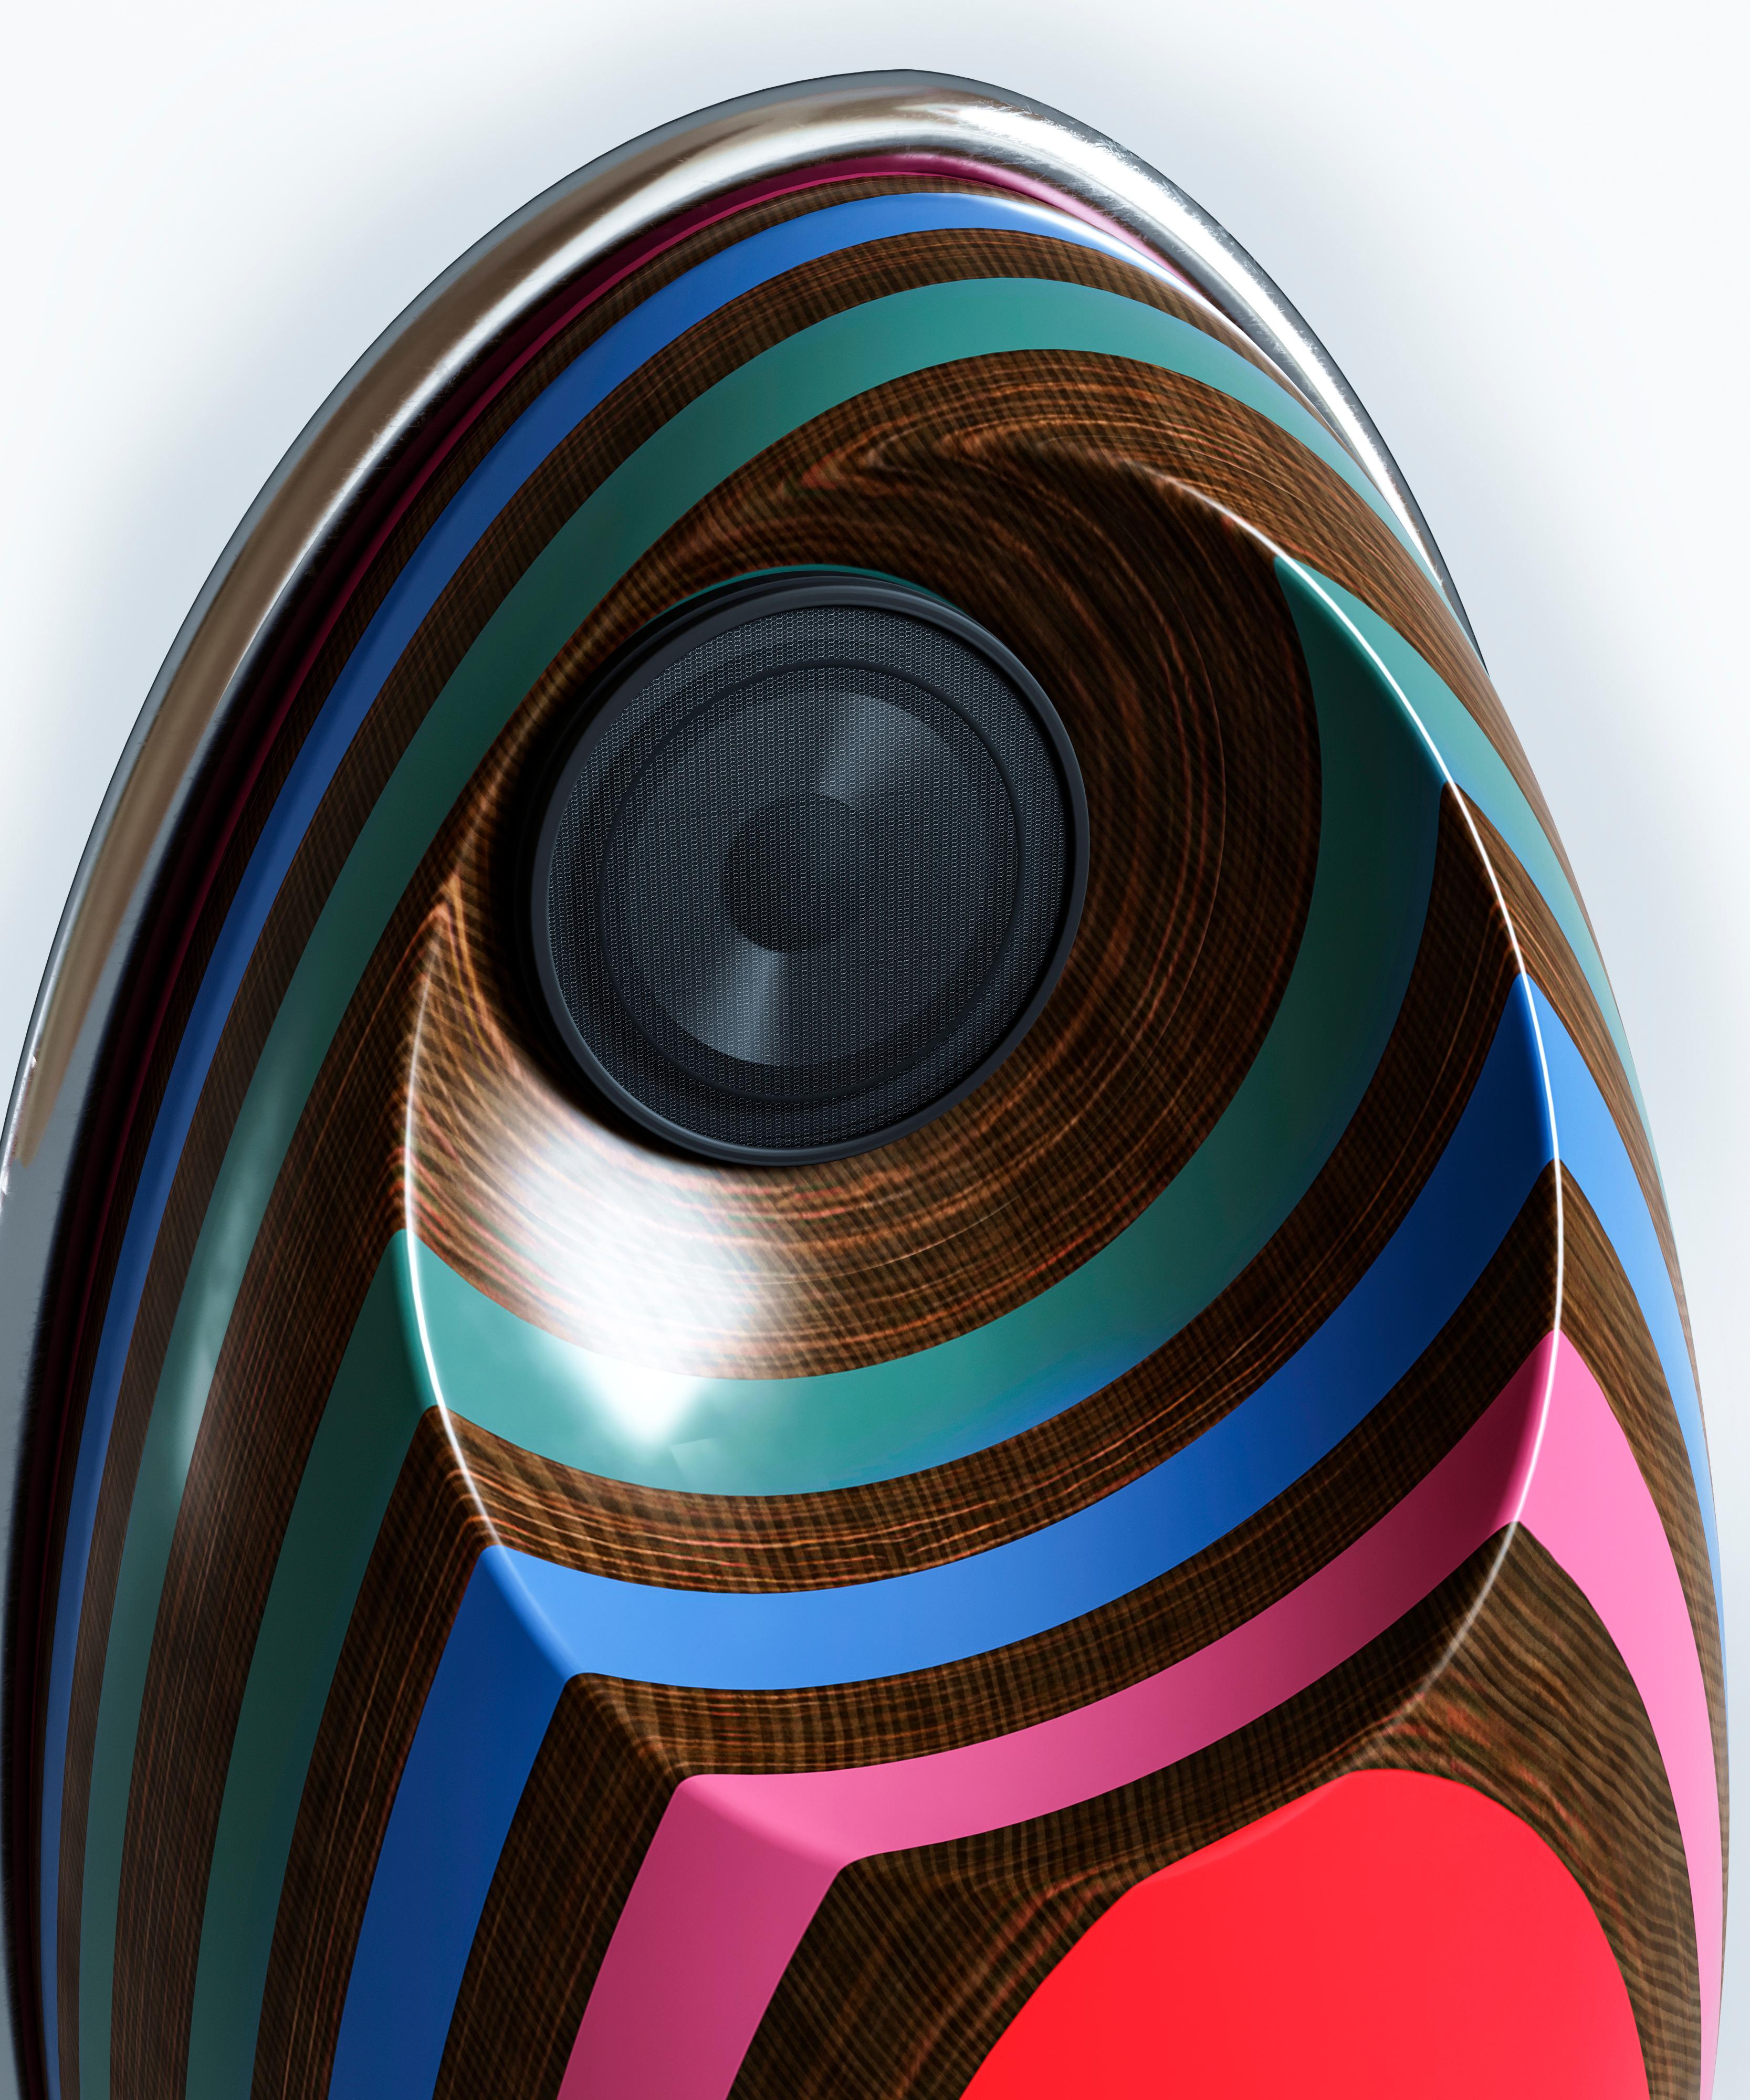 Ukrainian Extraordinary Spherical Futuristic Cabinet Eggs For Sale